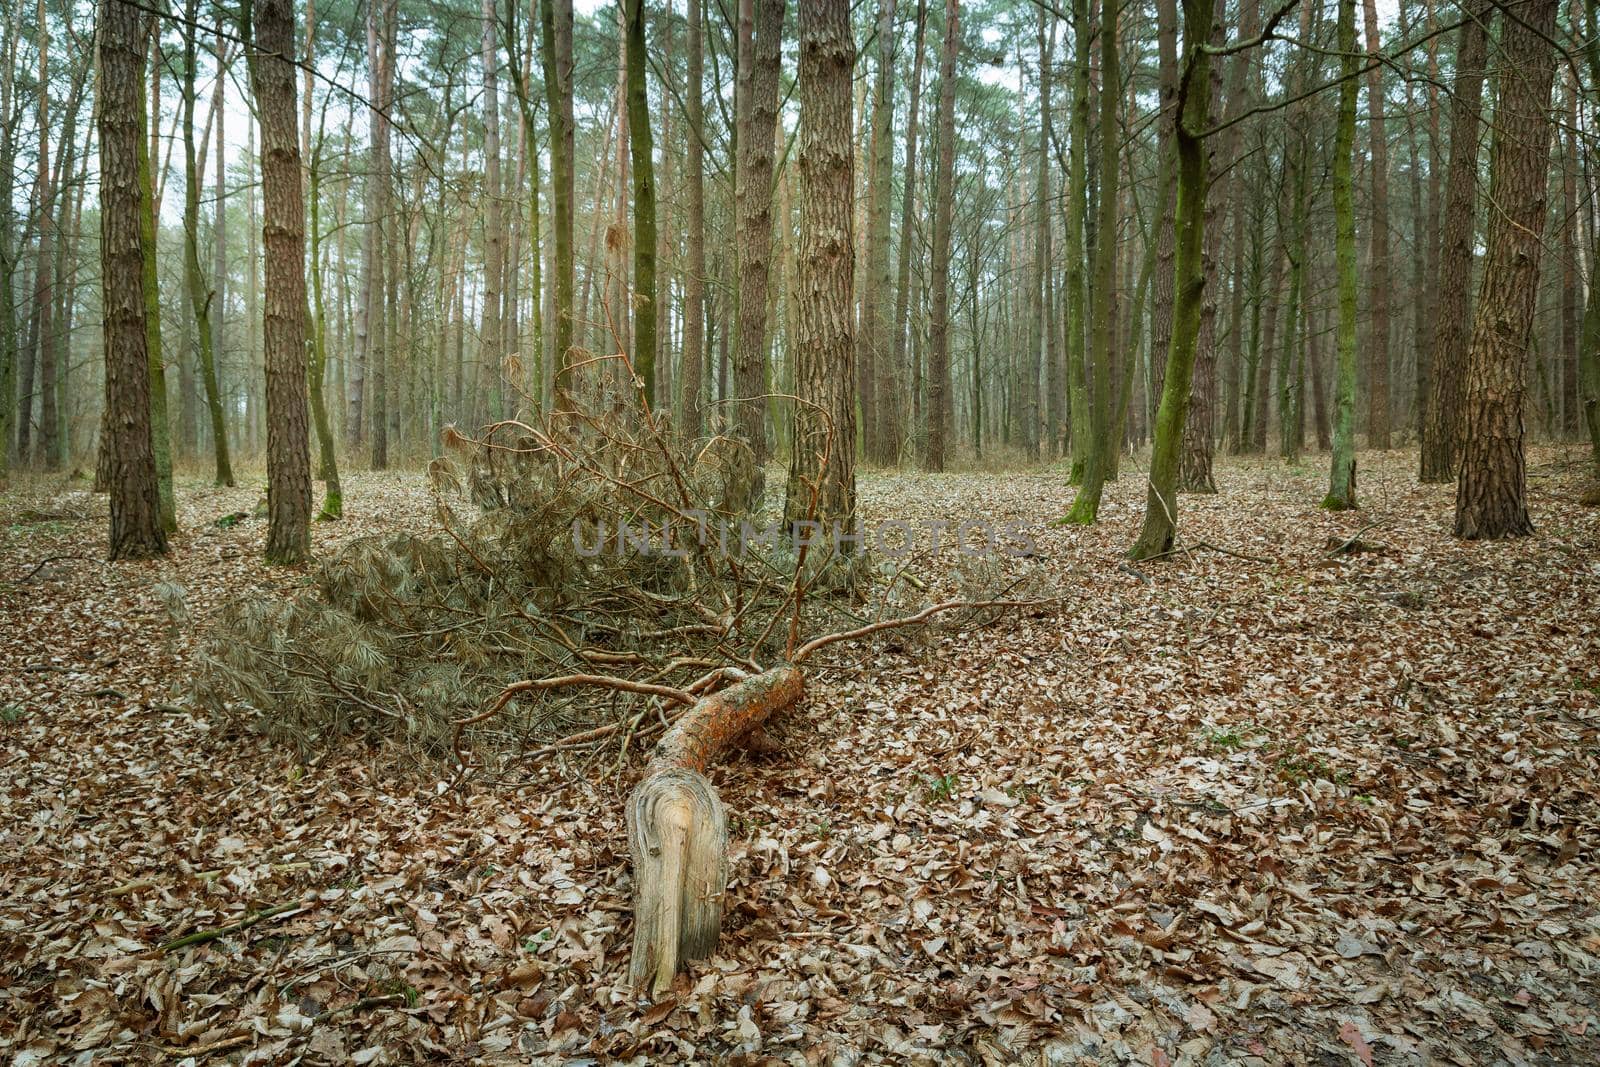 Broken branch in the forest, autumnal view by darekb22